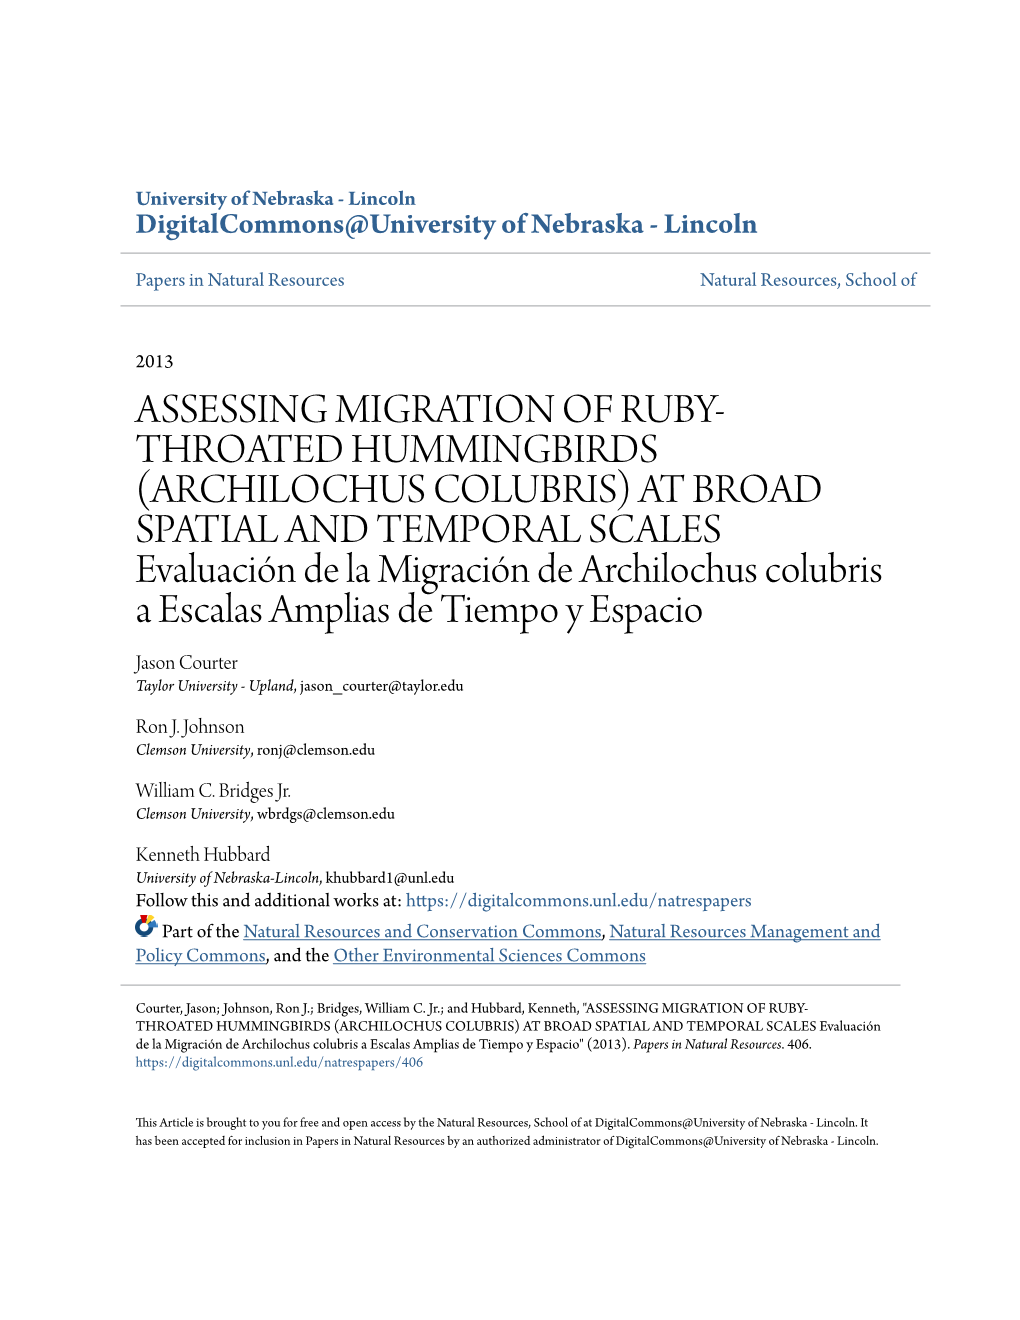 ASSESSING MIGRATION of RUBY-THROATED HUMMINGBIRDS (ARCHILOCHUS COLUBRIS) at BROAD SPATIAL and TEMPORAL SCALES Evaluación De La